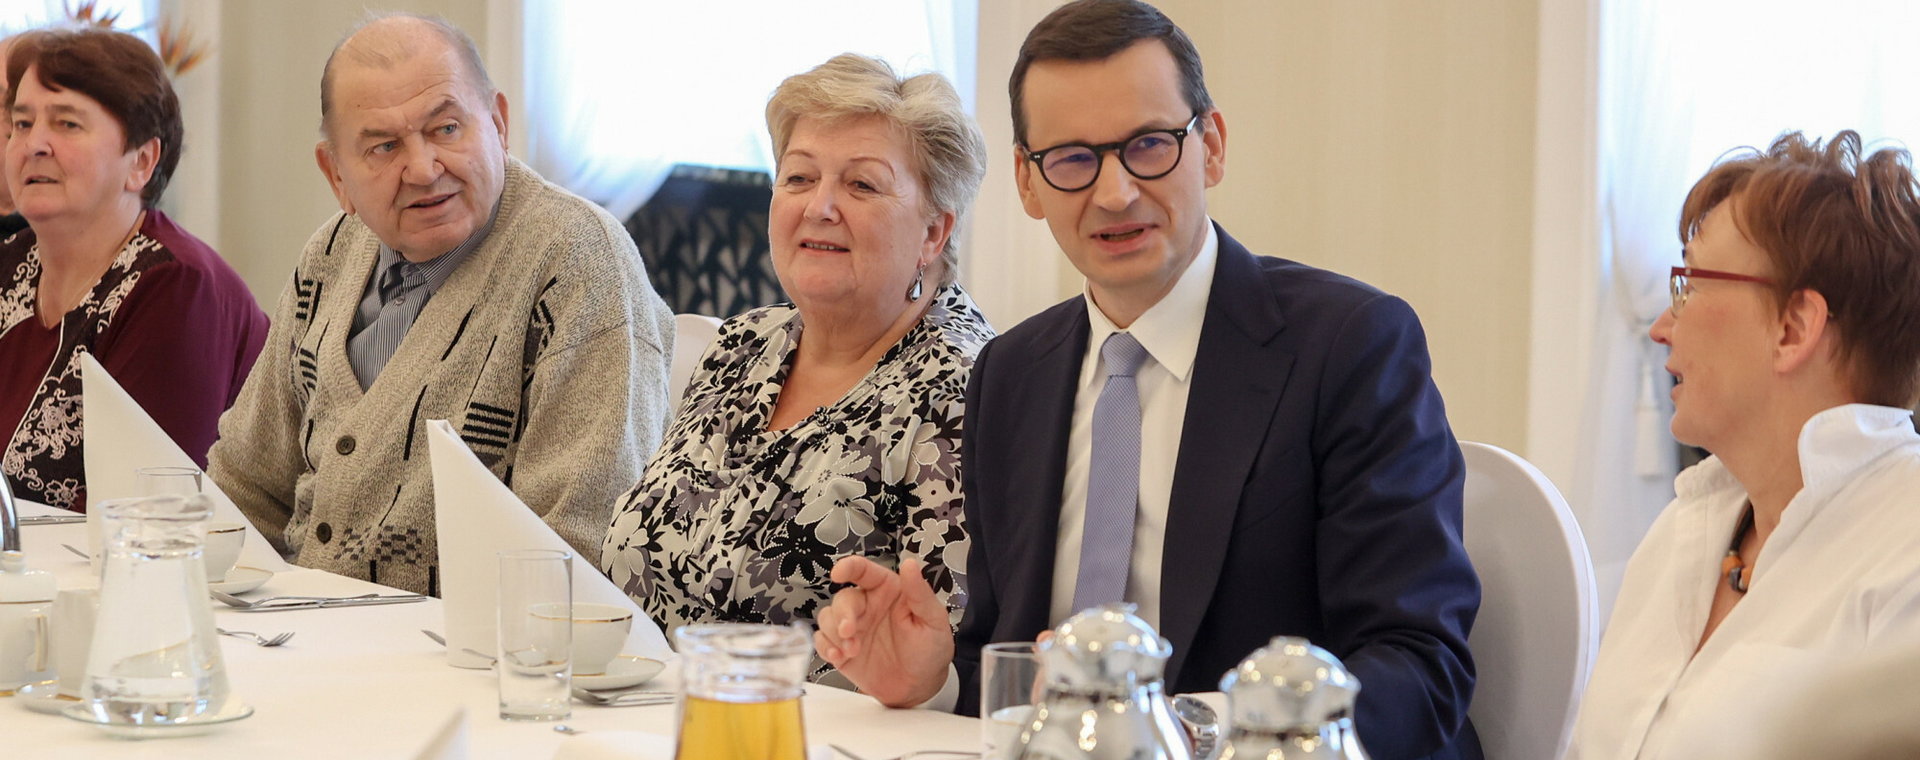 Rząd PiS zróżnicował świadczenia czerwcowych emerytów. Na zdjęciu premier Mateusz Morawiecki na spotkaniu z seniorami